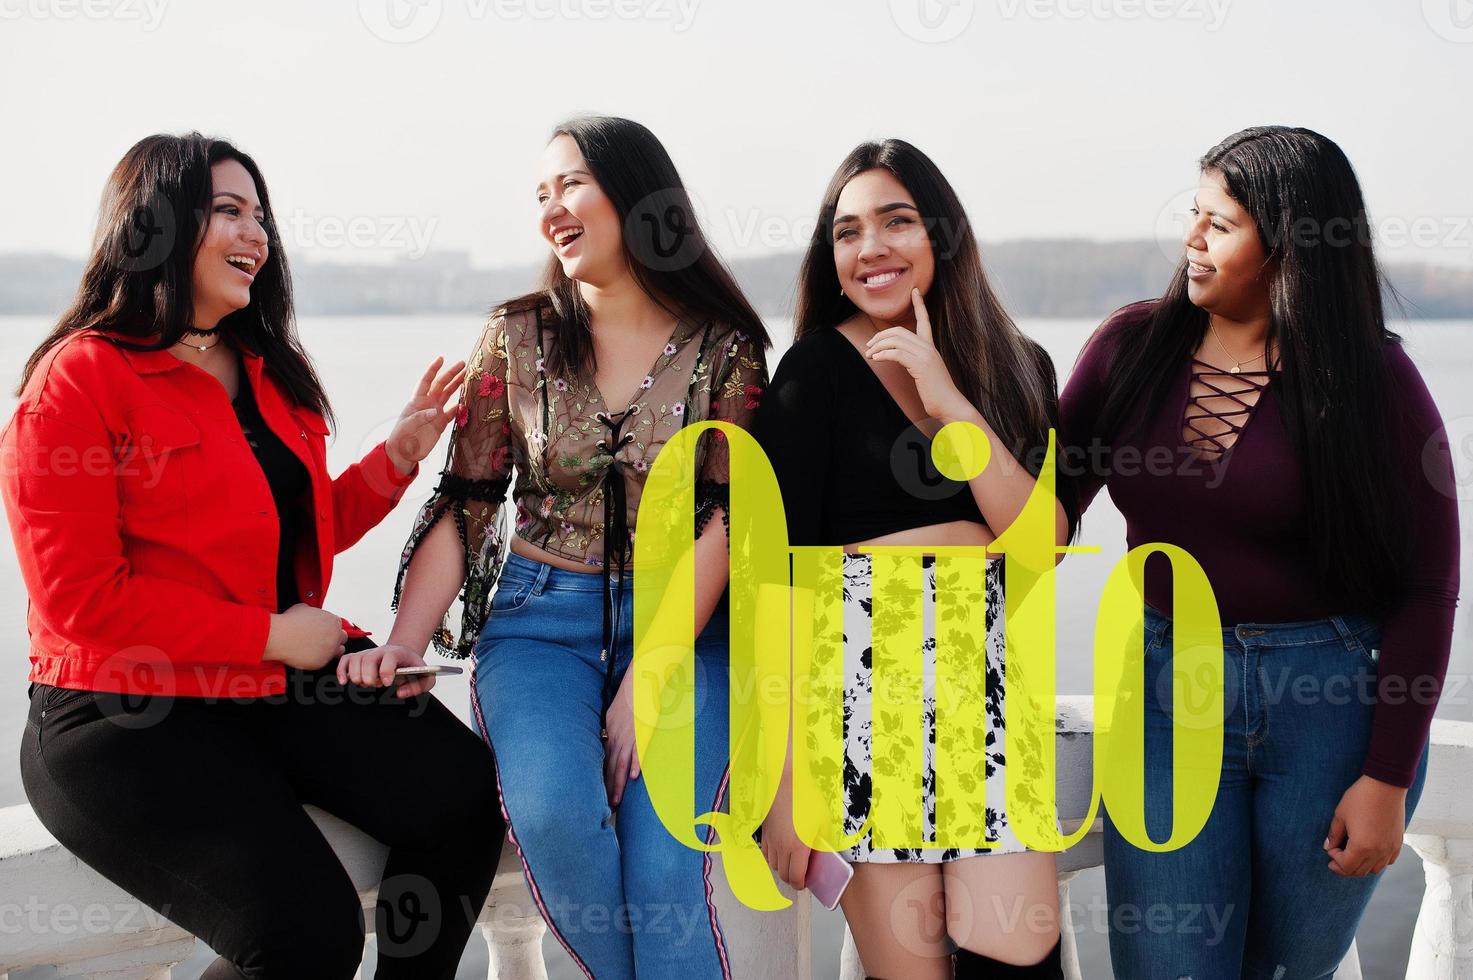 cidade de quito. grupo de quatro meninas latinas felizes e bonitas do Equador. foto